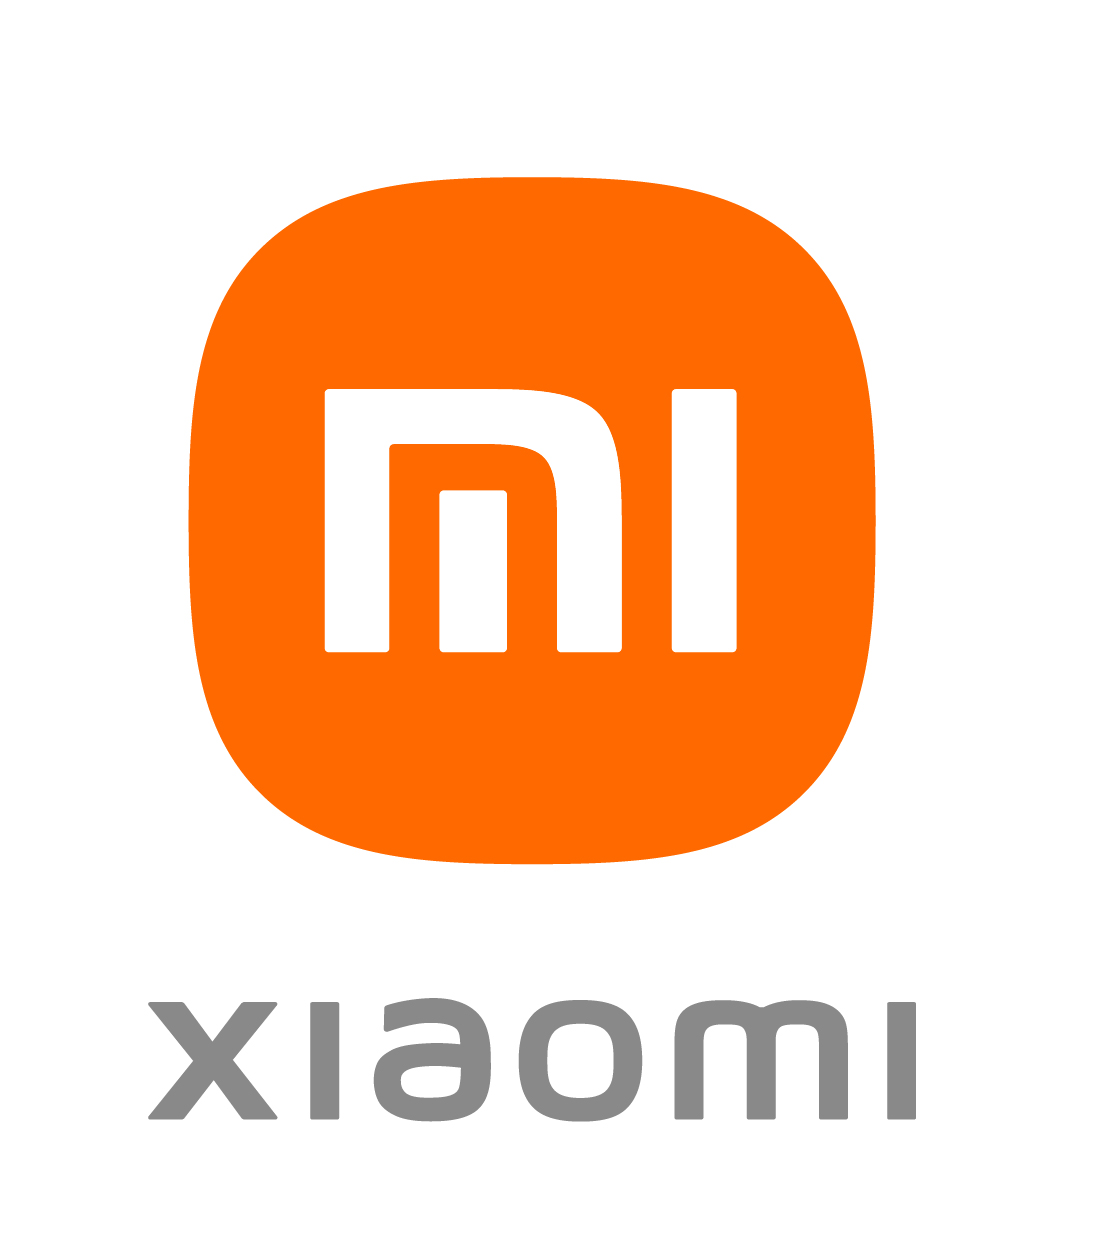 Xiaomi elektrikli araç sektörüne adım atıyor